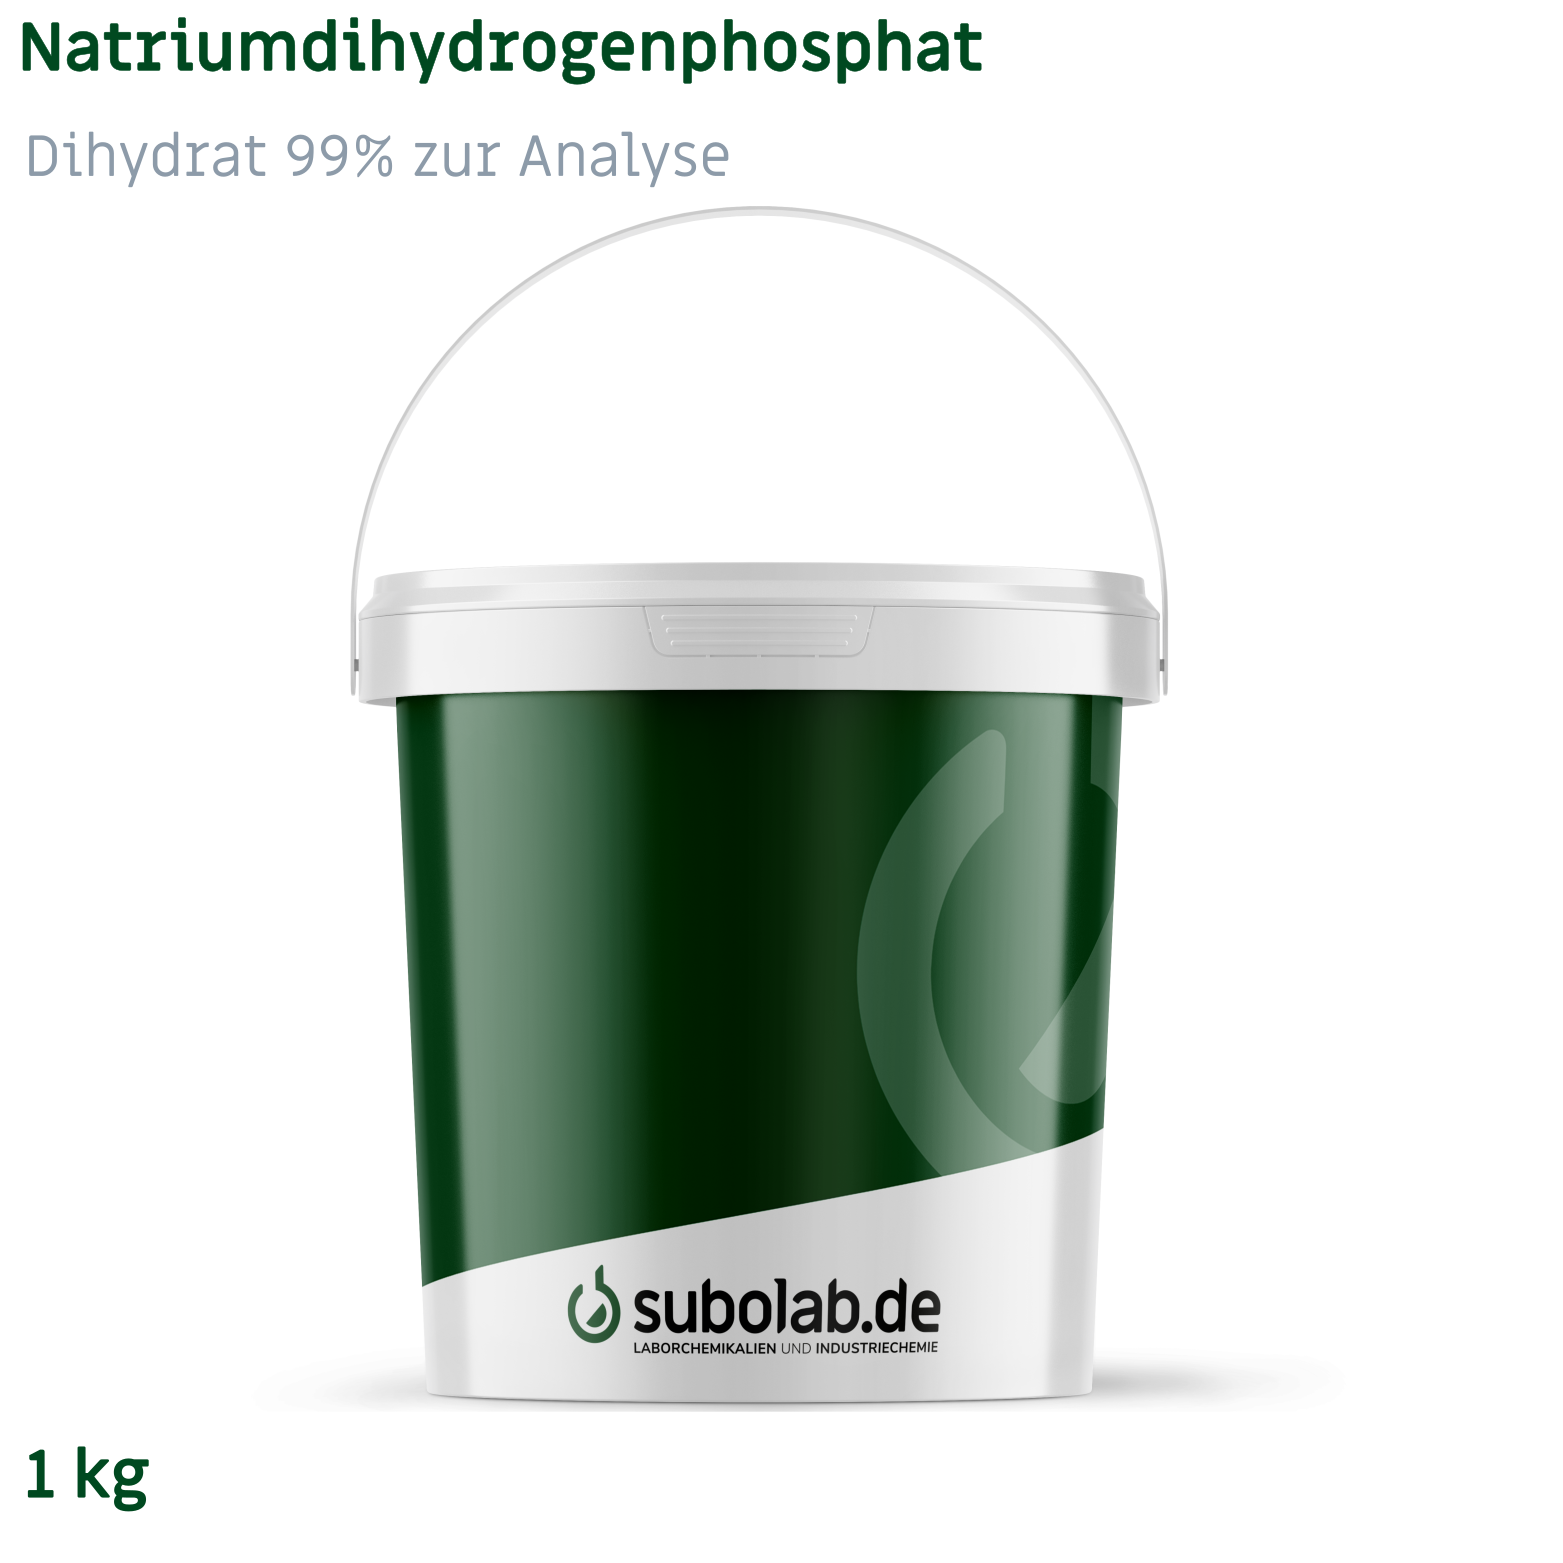 Bild von Natriumdihydrogenphosphat - Dihydrat 99% zur Analyse (1 kg)